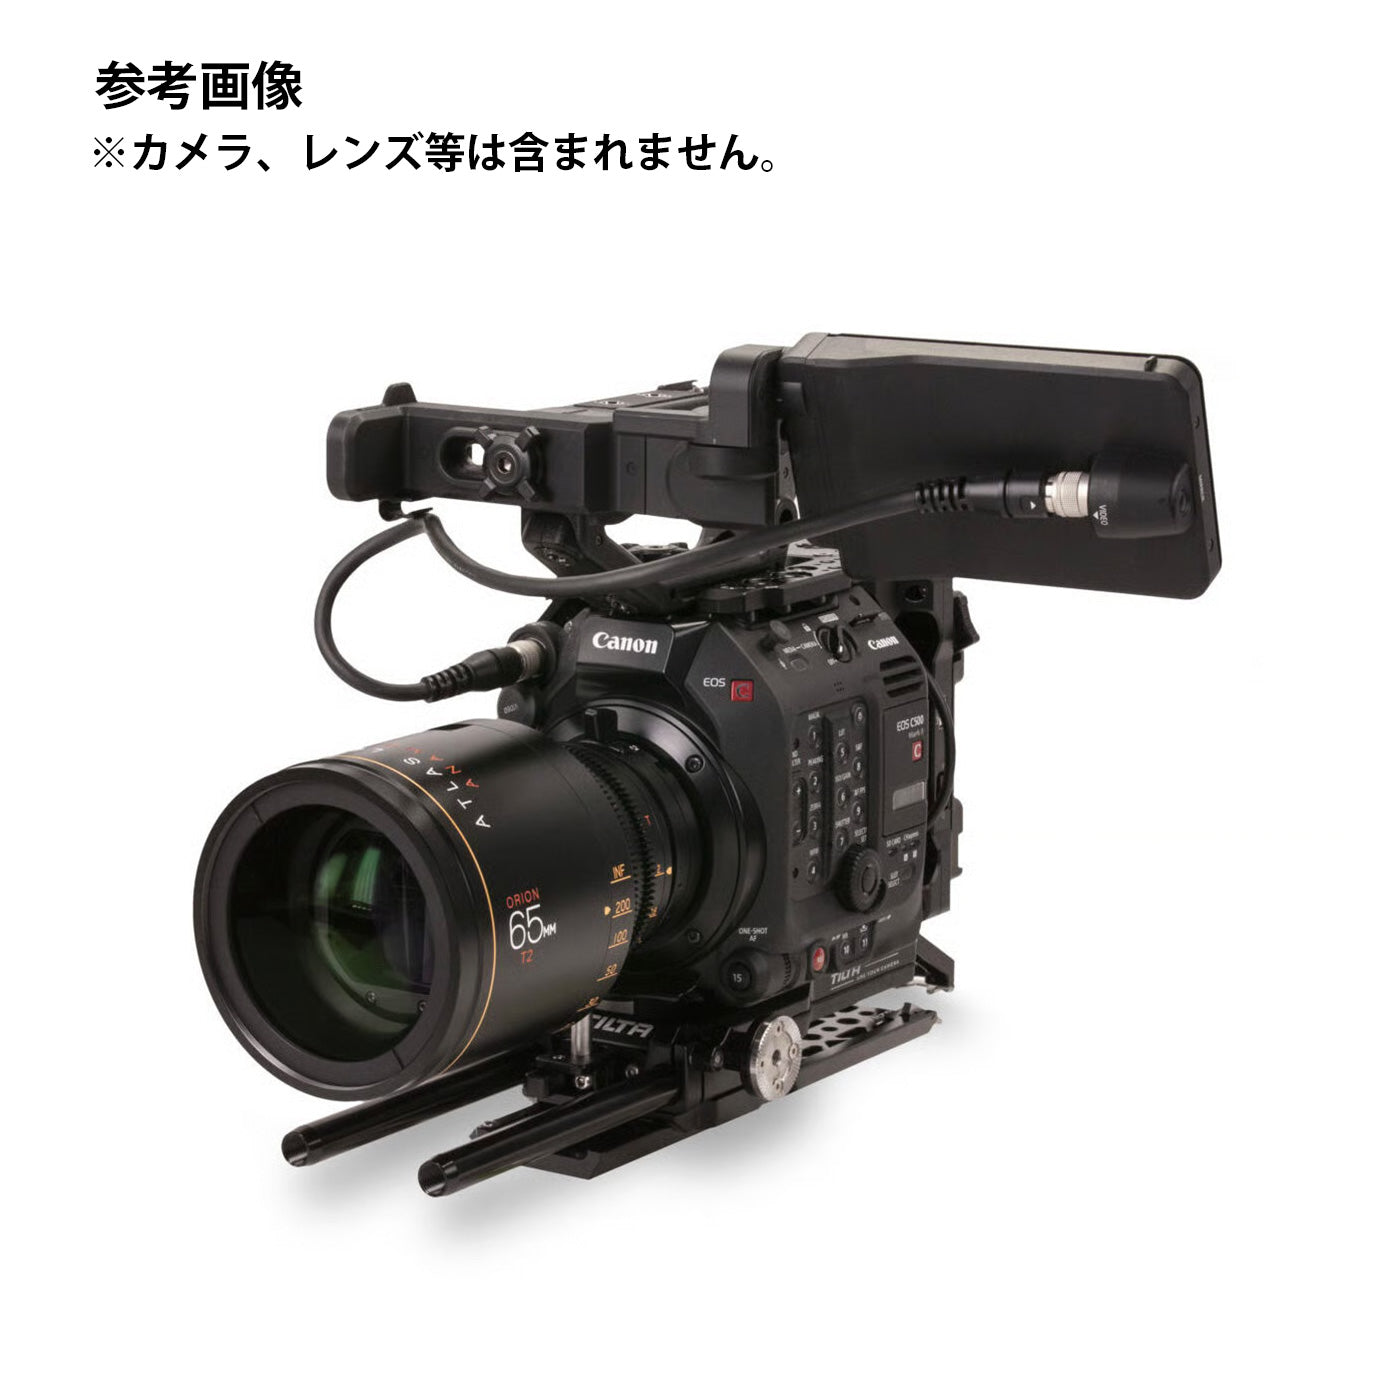 TILTA(ティルタ) Camera Cage for Canon C500 Mk II/C300 Mk III Kit B - Gold Mount(アントンマウント) ES-T19-B-AB